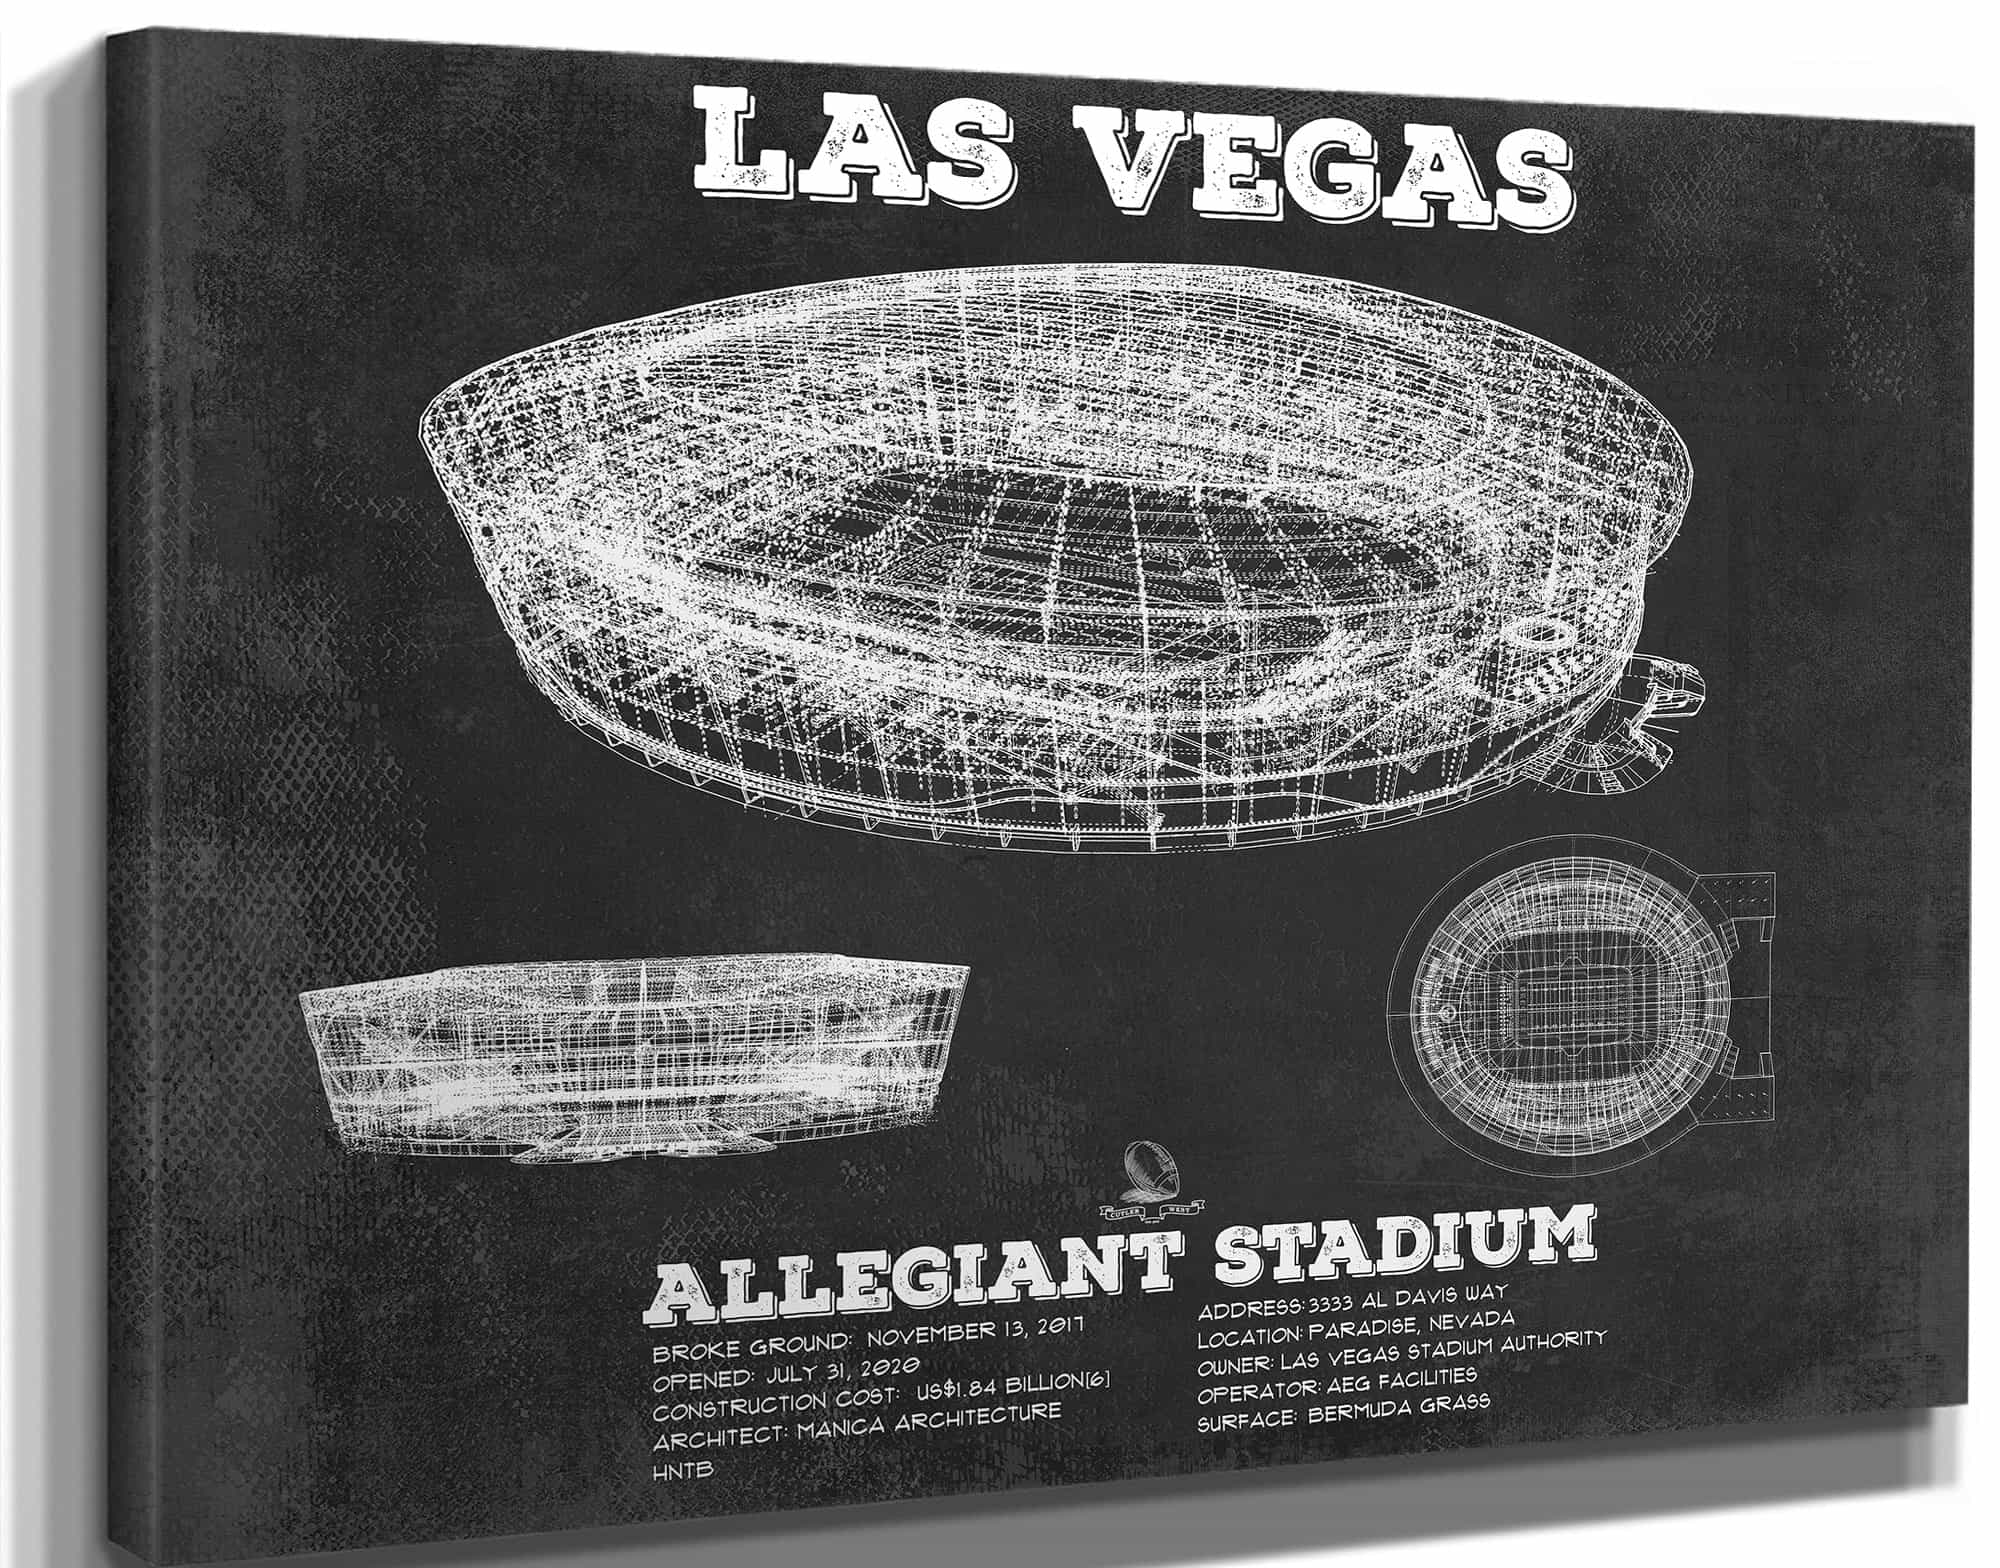 Las Vegas Raiders Allegiant Stadium Vintage Football Print